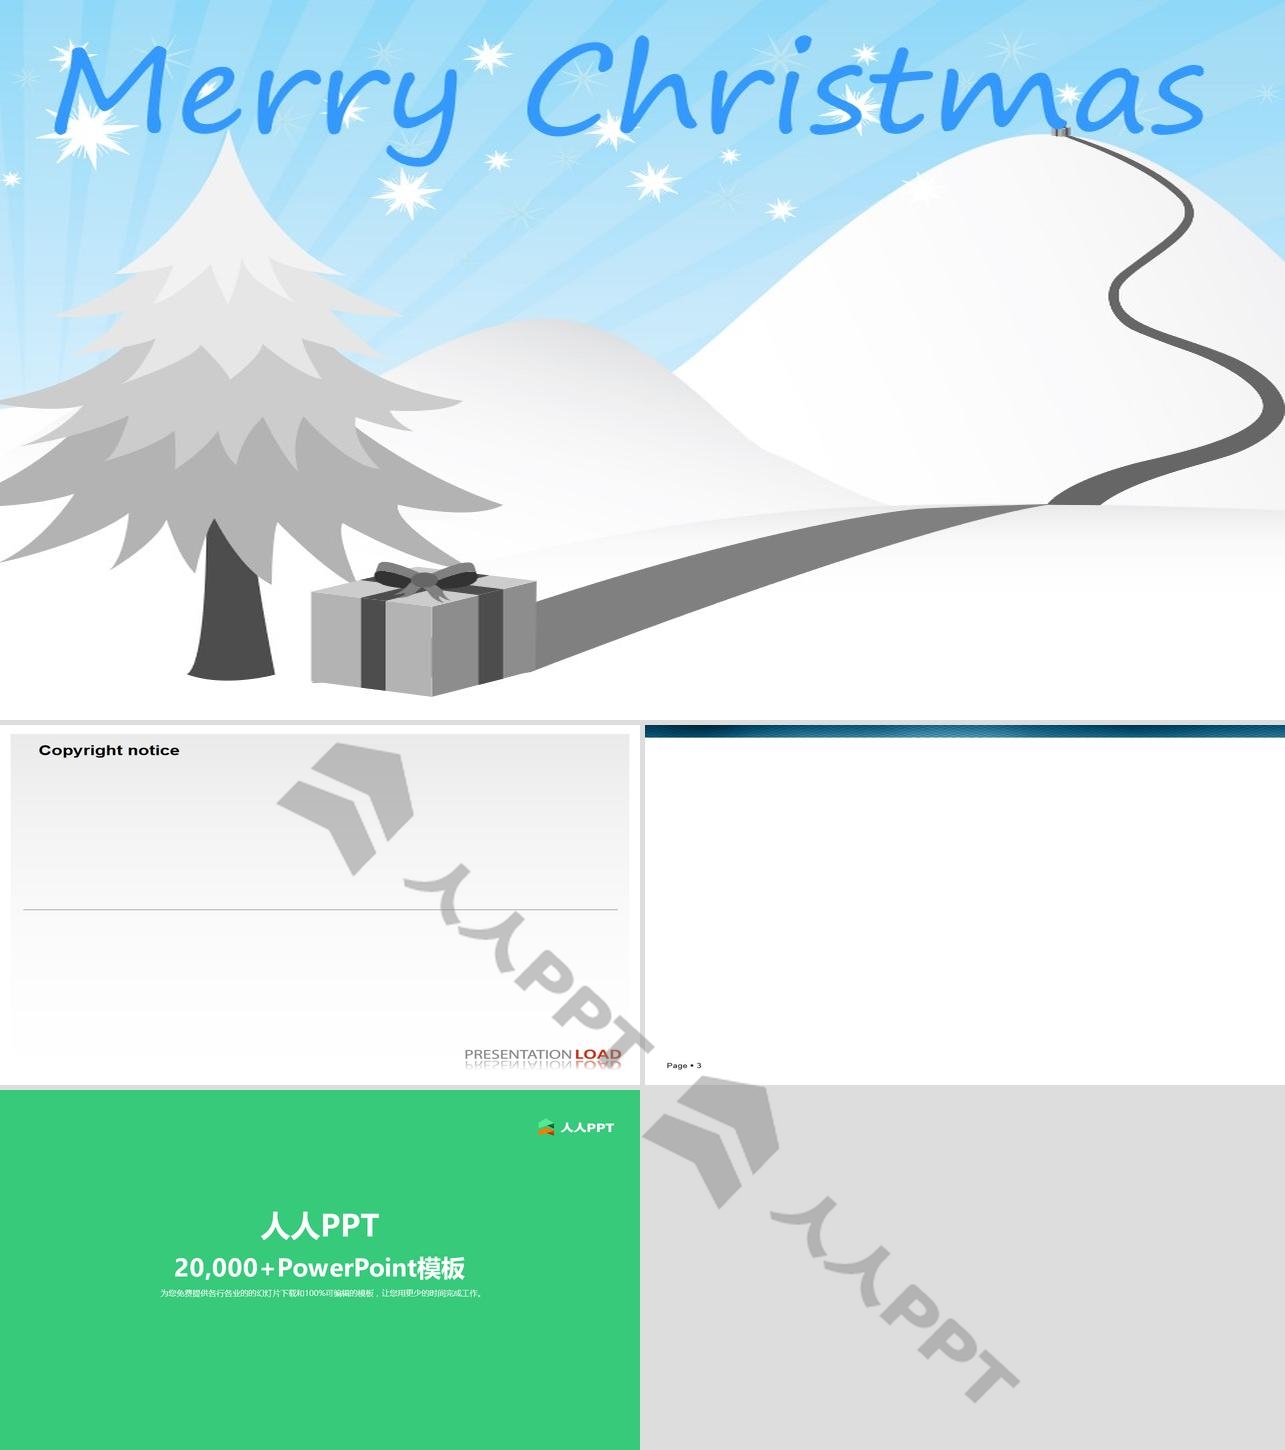 圣诞礼物从雪山顶滑下来动画――圣诞节祝福贺卡PPT模板长图